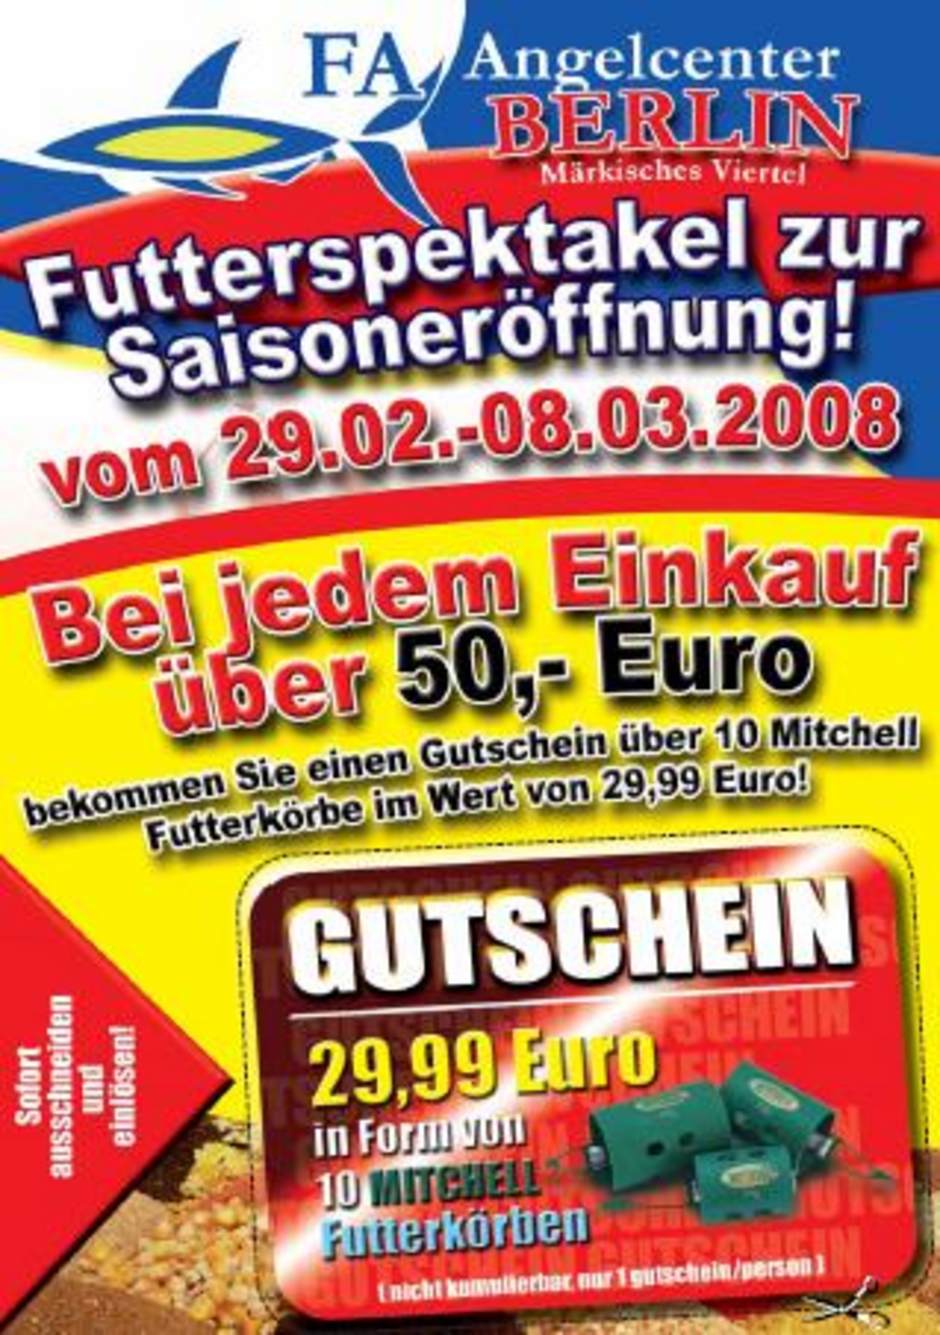  Für den Osten: Das Futterspektakel des FA Angelcenters (am 29.02.-08.03)